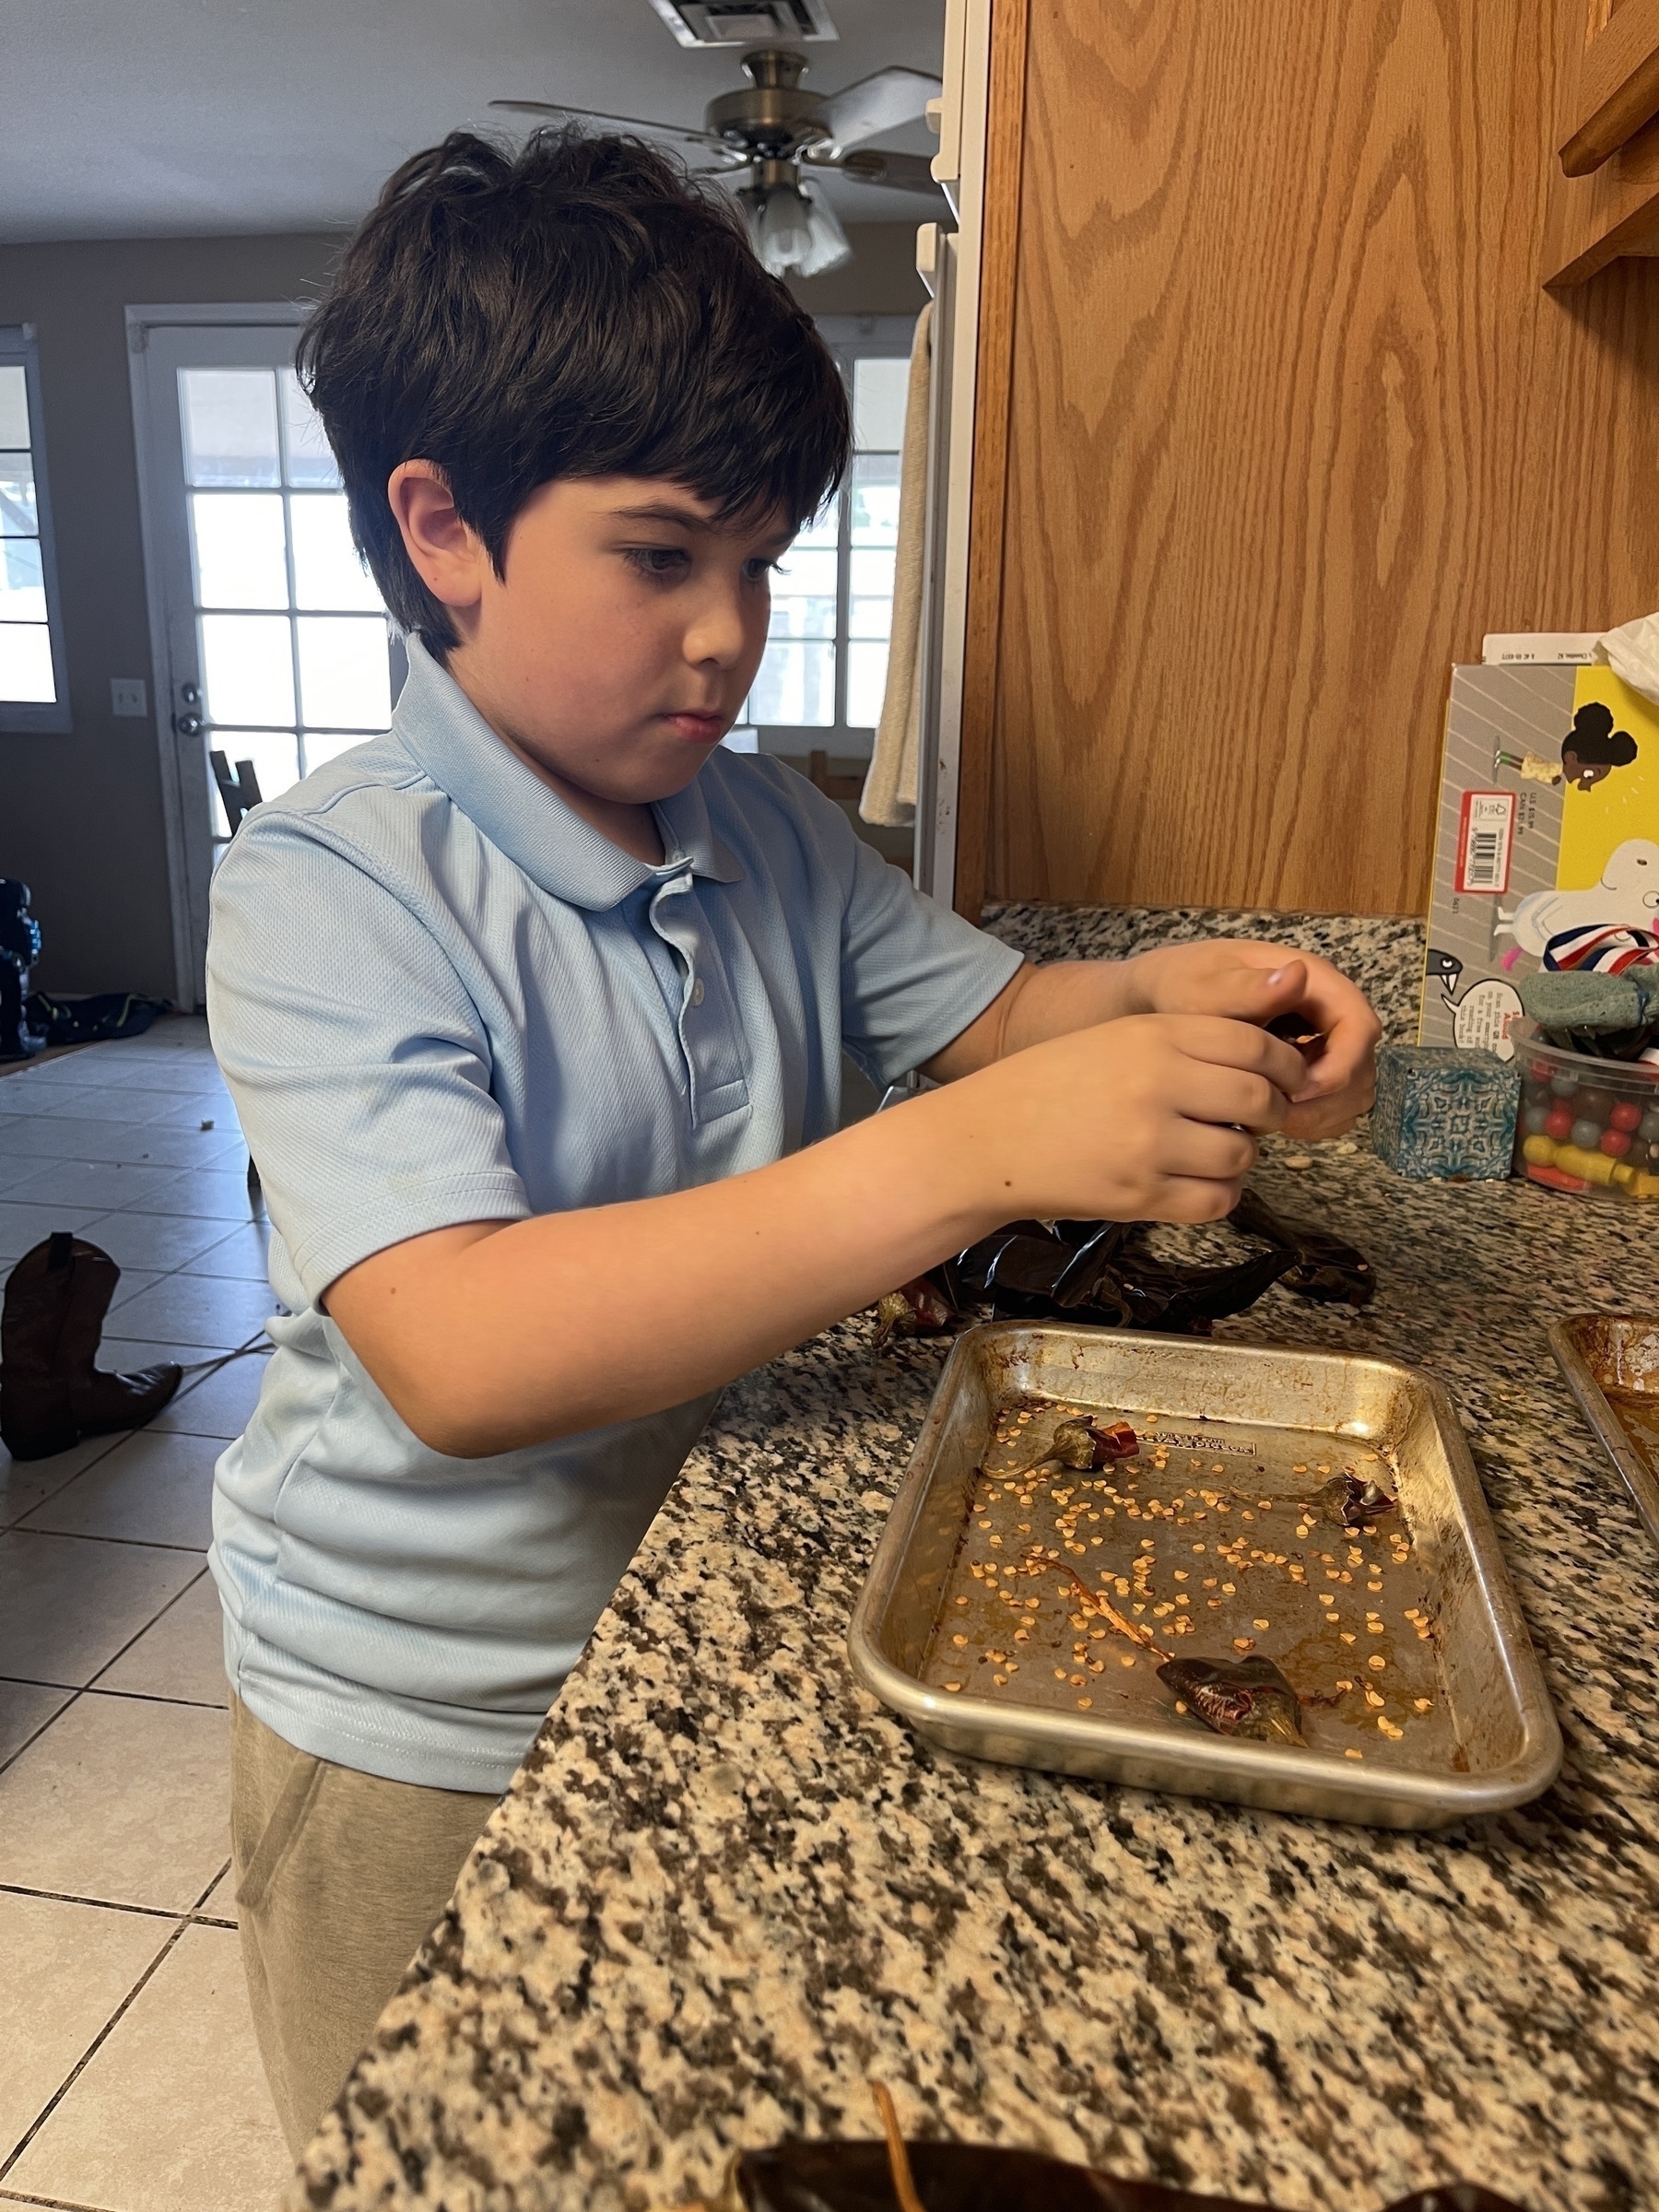 Young boy de-seeding guajillo chiles